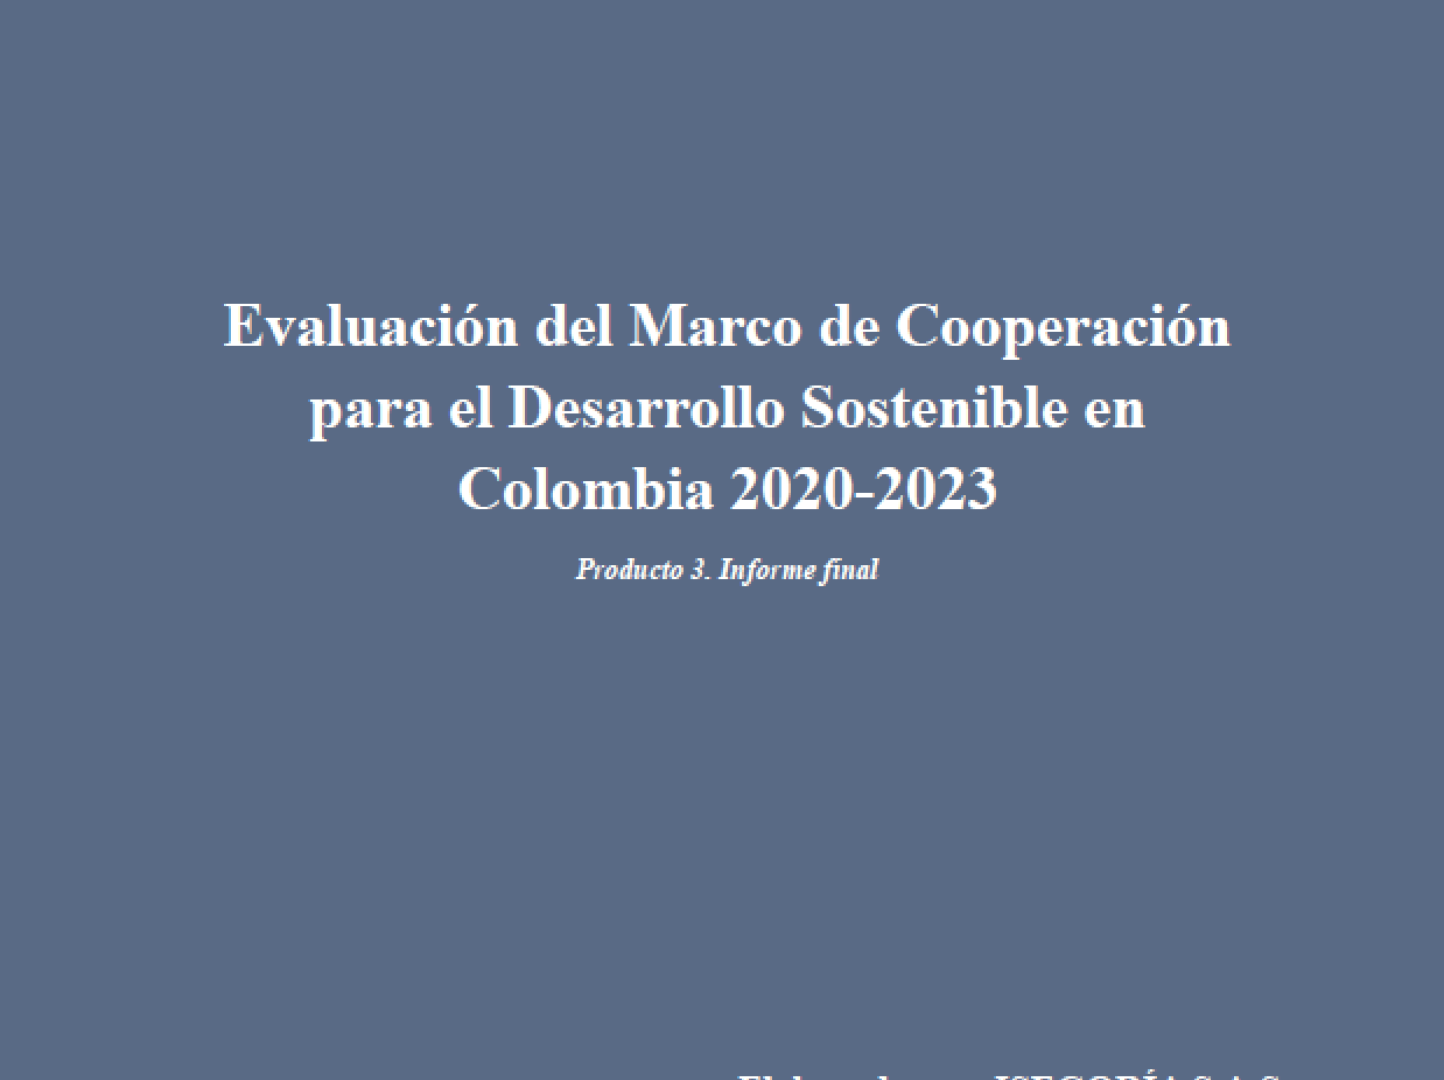 Evaluación del Marco de Cooperación para el Desarrollo Sostenible 2020-2023. Producto 1: Informe final. Elaborado por: ISEGORÍA S.A.S.